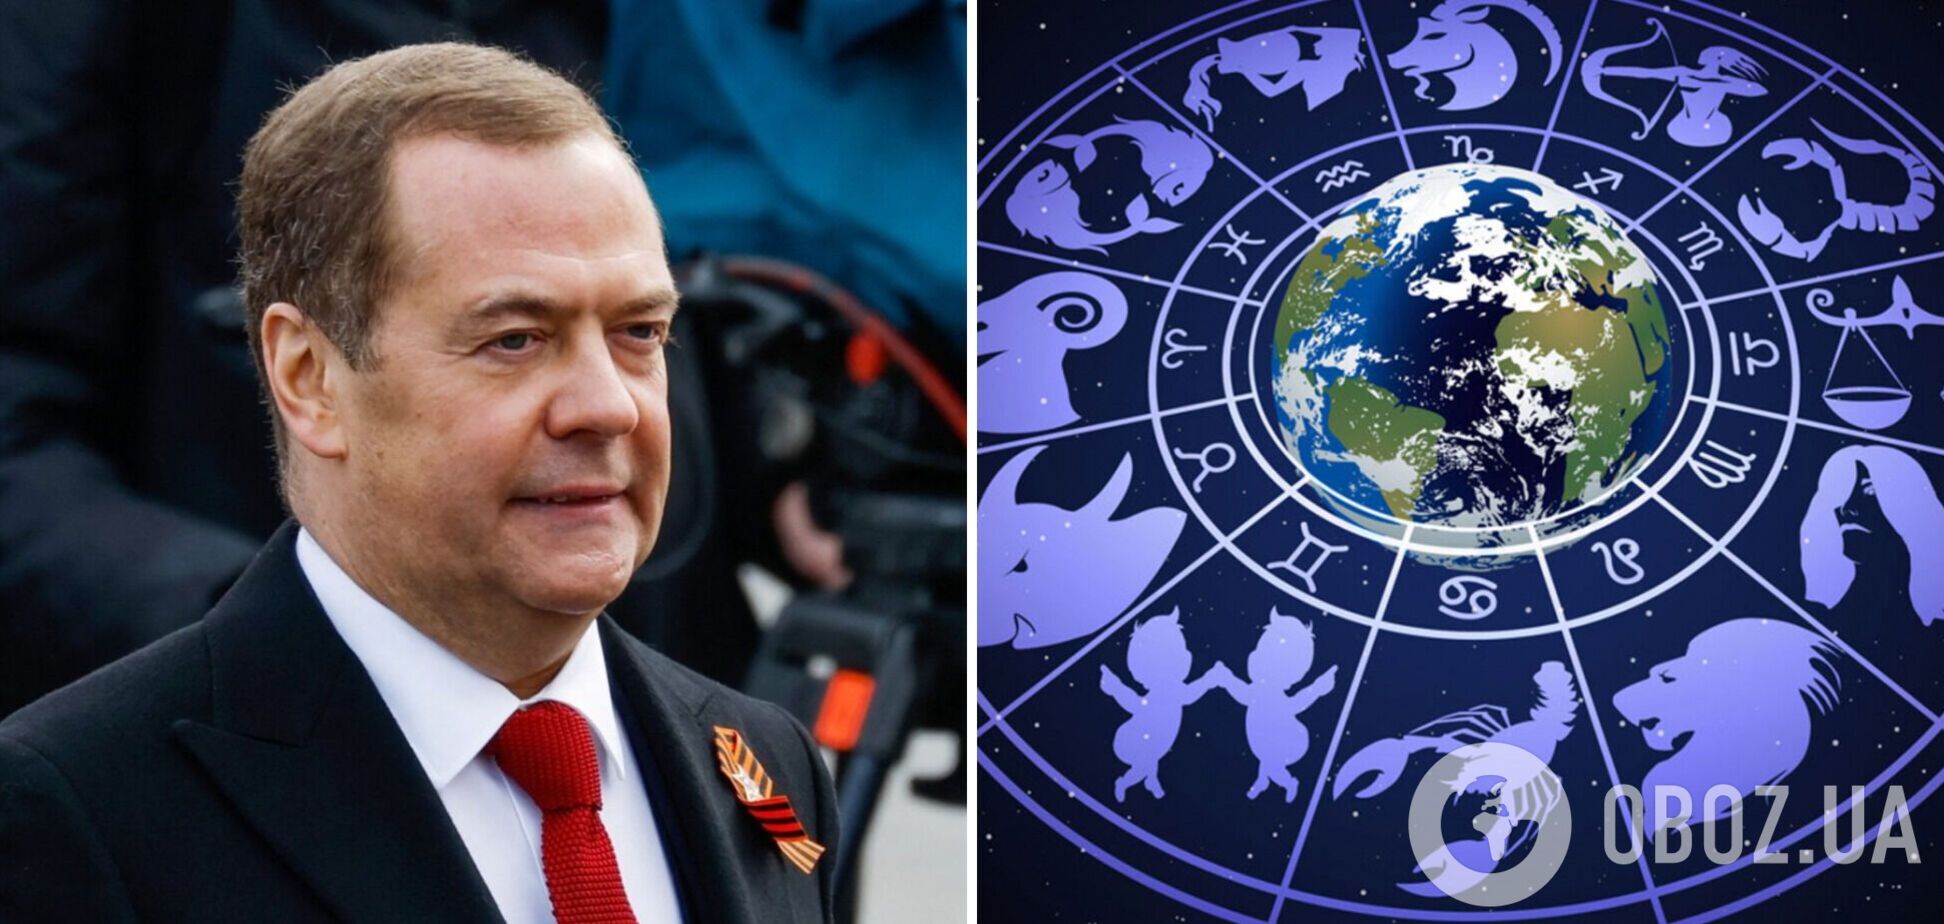 Медведев решил побыть астрологом и дал 'гороскоп' на 2023 год: предсказывает войны, развал и нищету